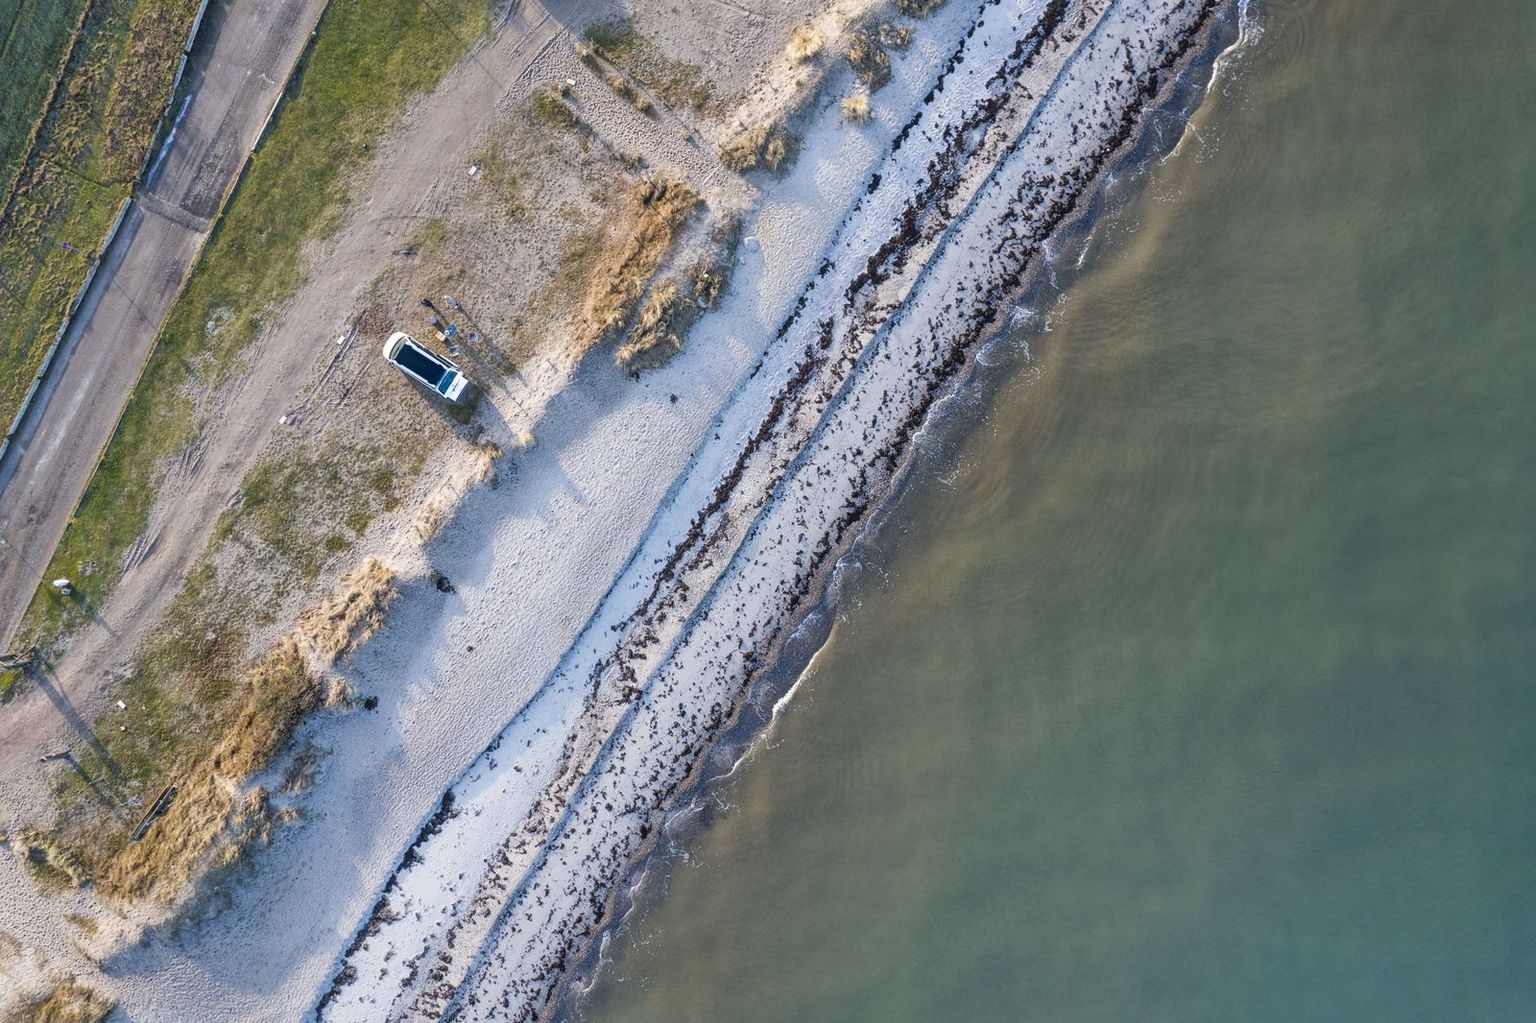 Vogelperspektive eines Vans, der am Strand der Ostsee parkt, direkte Lage am Wasser/Meer